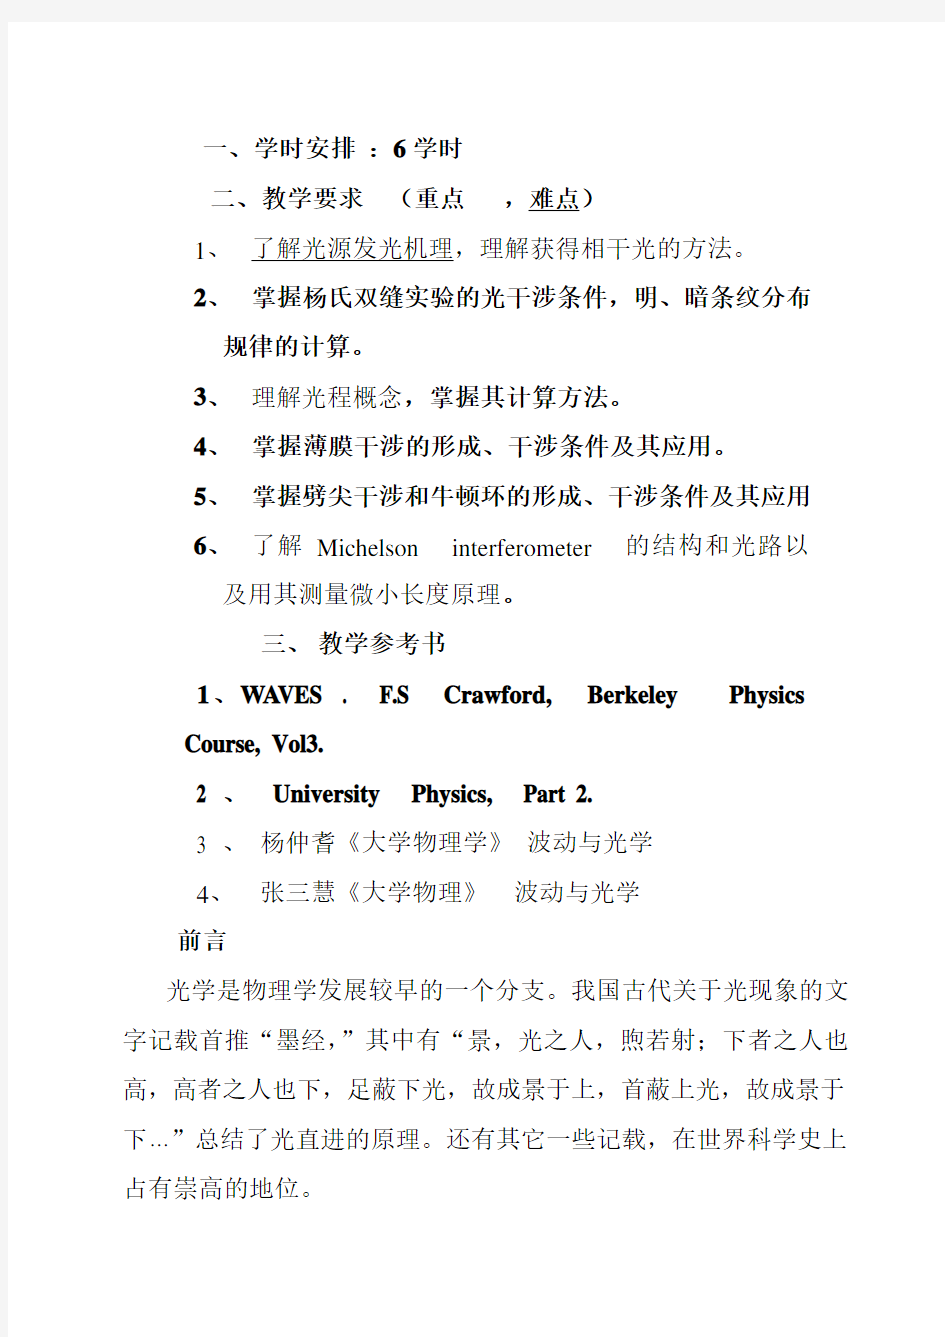 安徽建筑大学《大学物理A2》课堂笔记&考试题库---光的干涉(一)刘果红